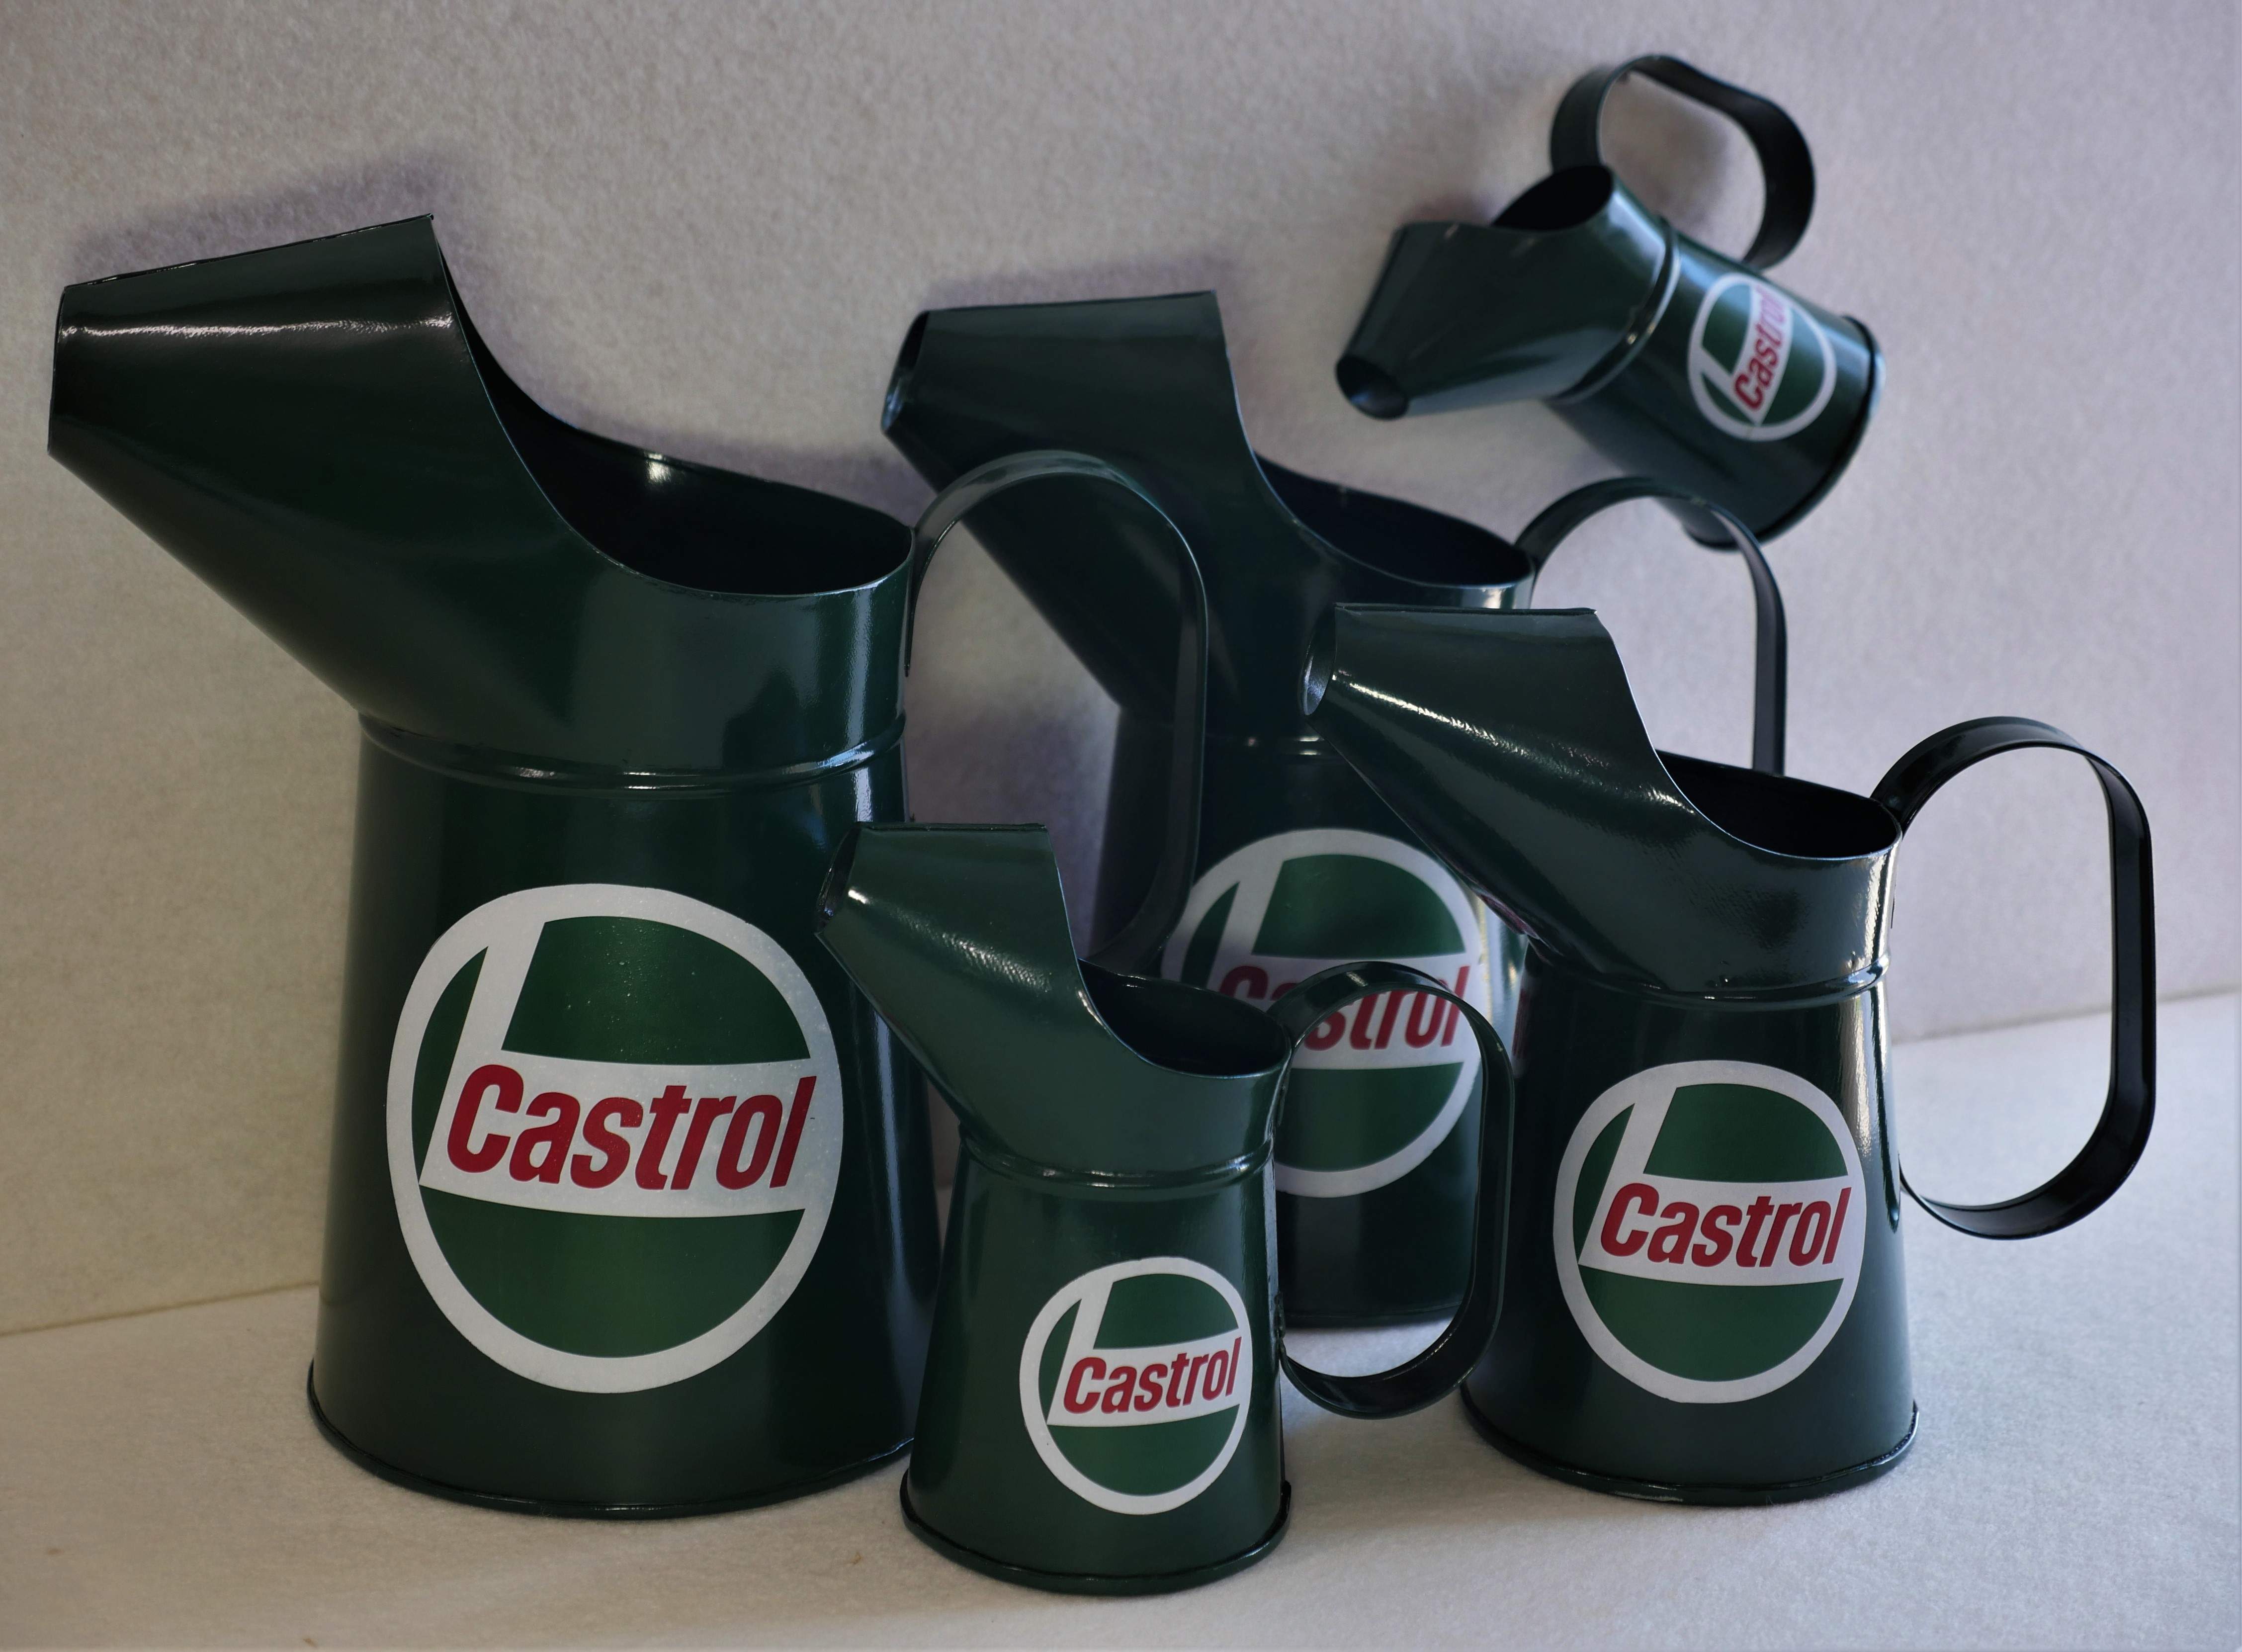 Castrol Oil jugs.